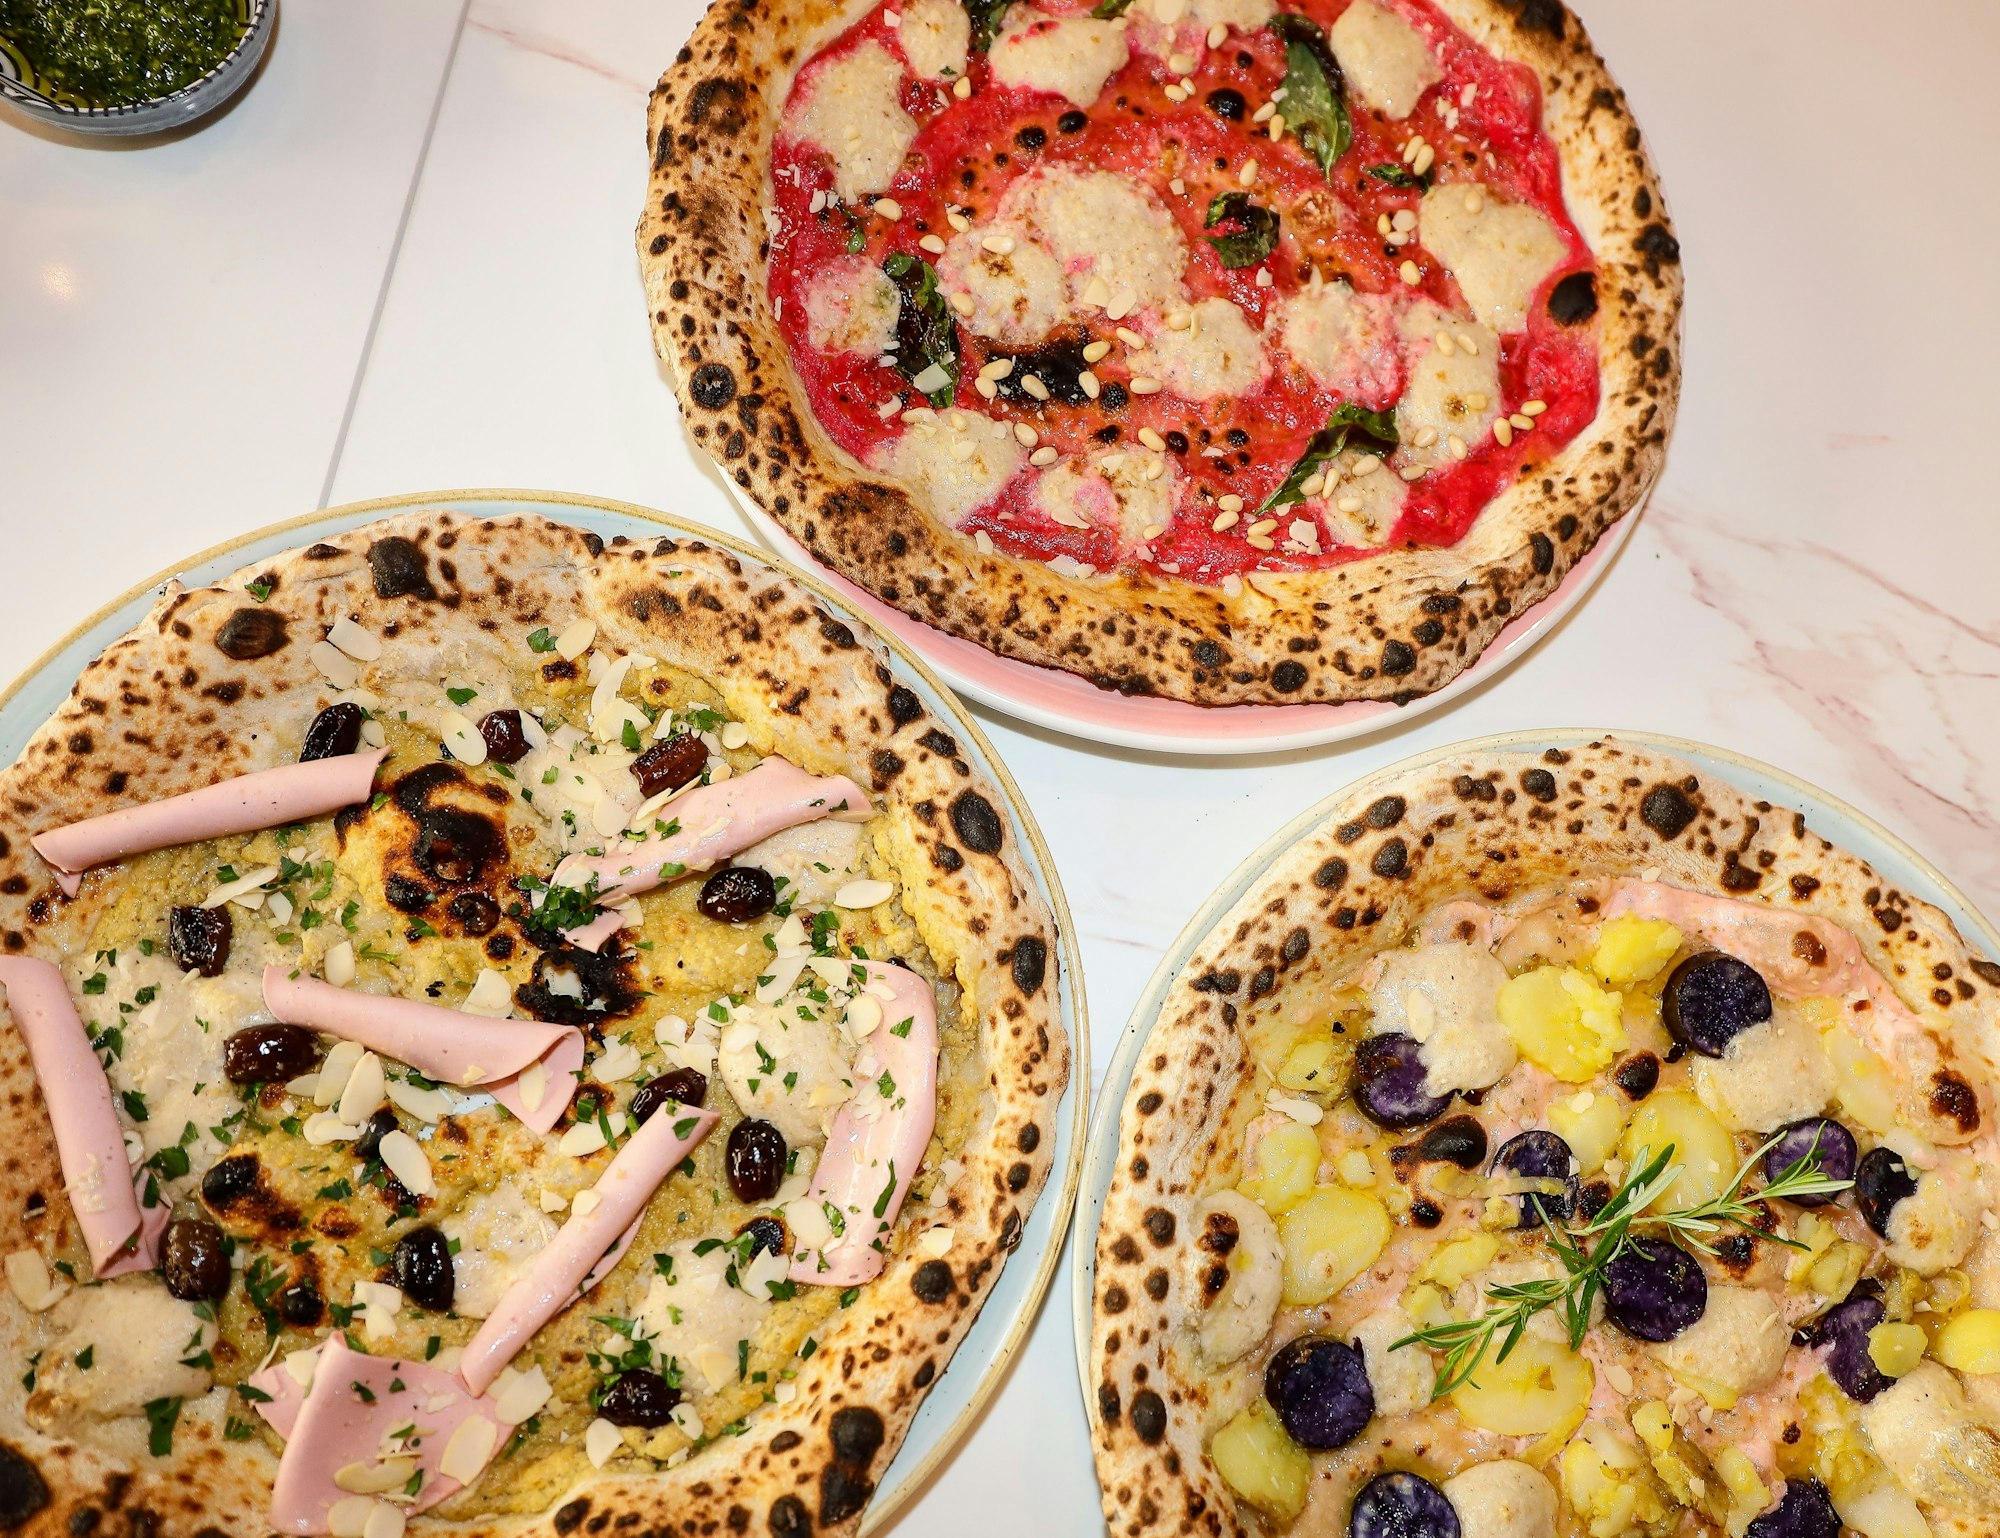 Drei verschiedene Pizzen mit unterschiedlichem Belag.